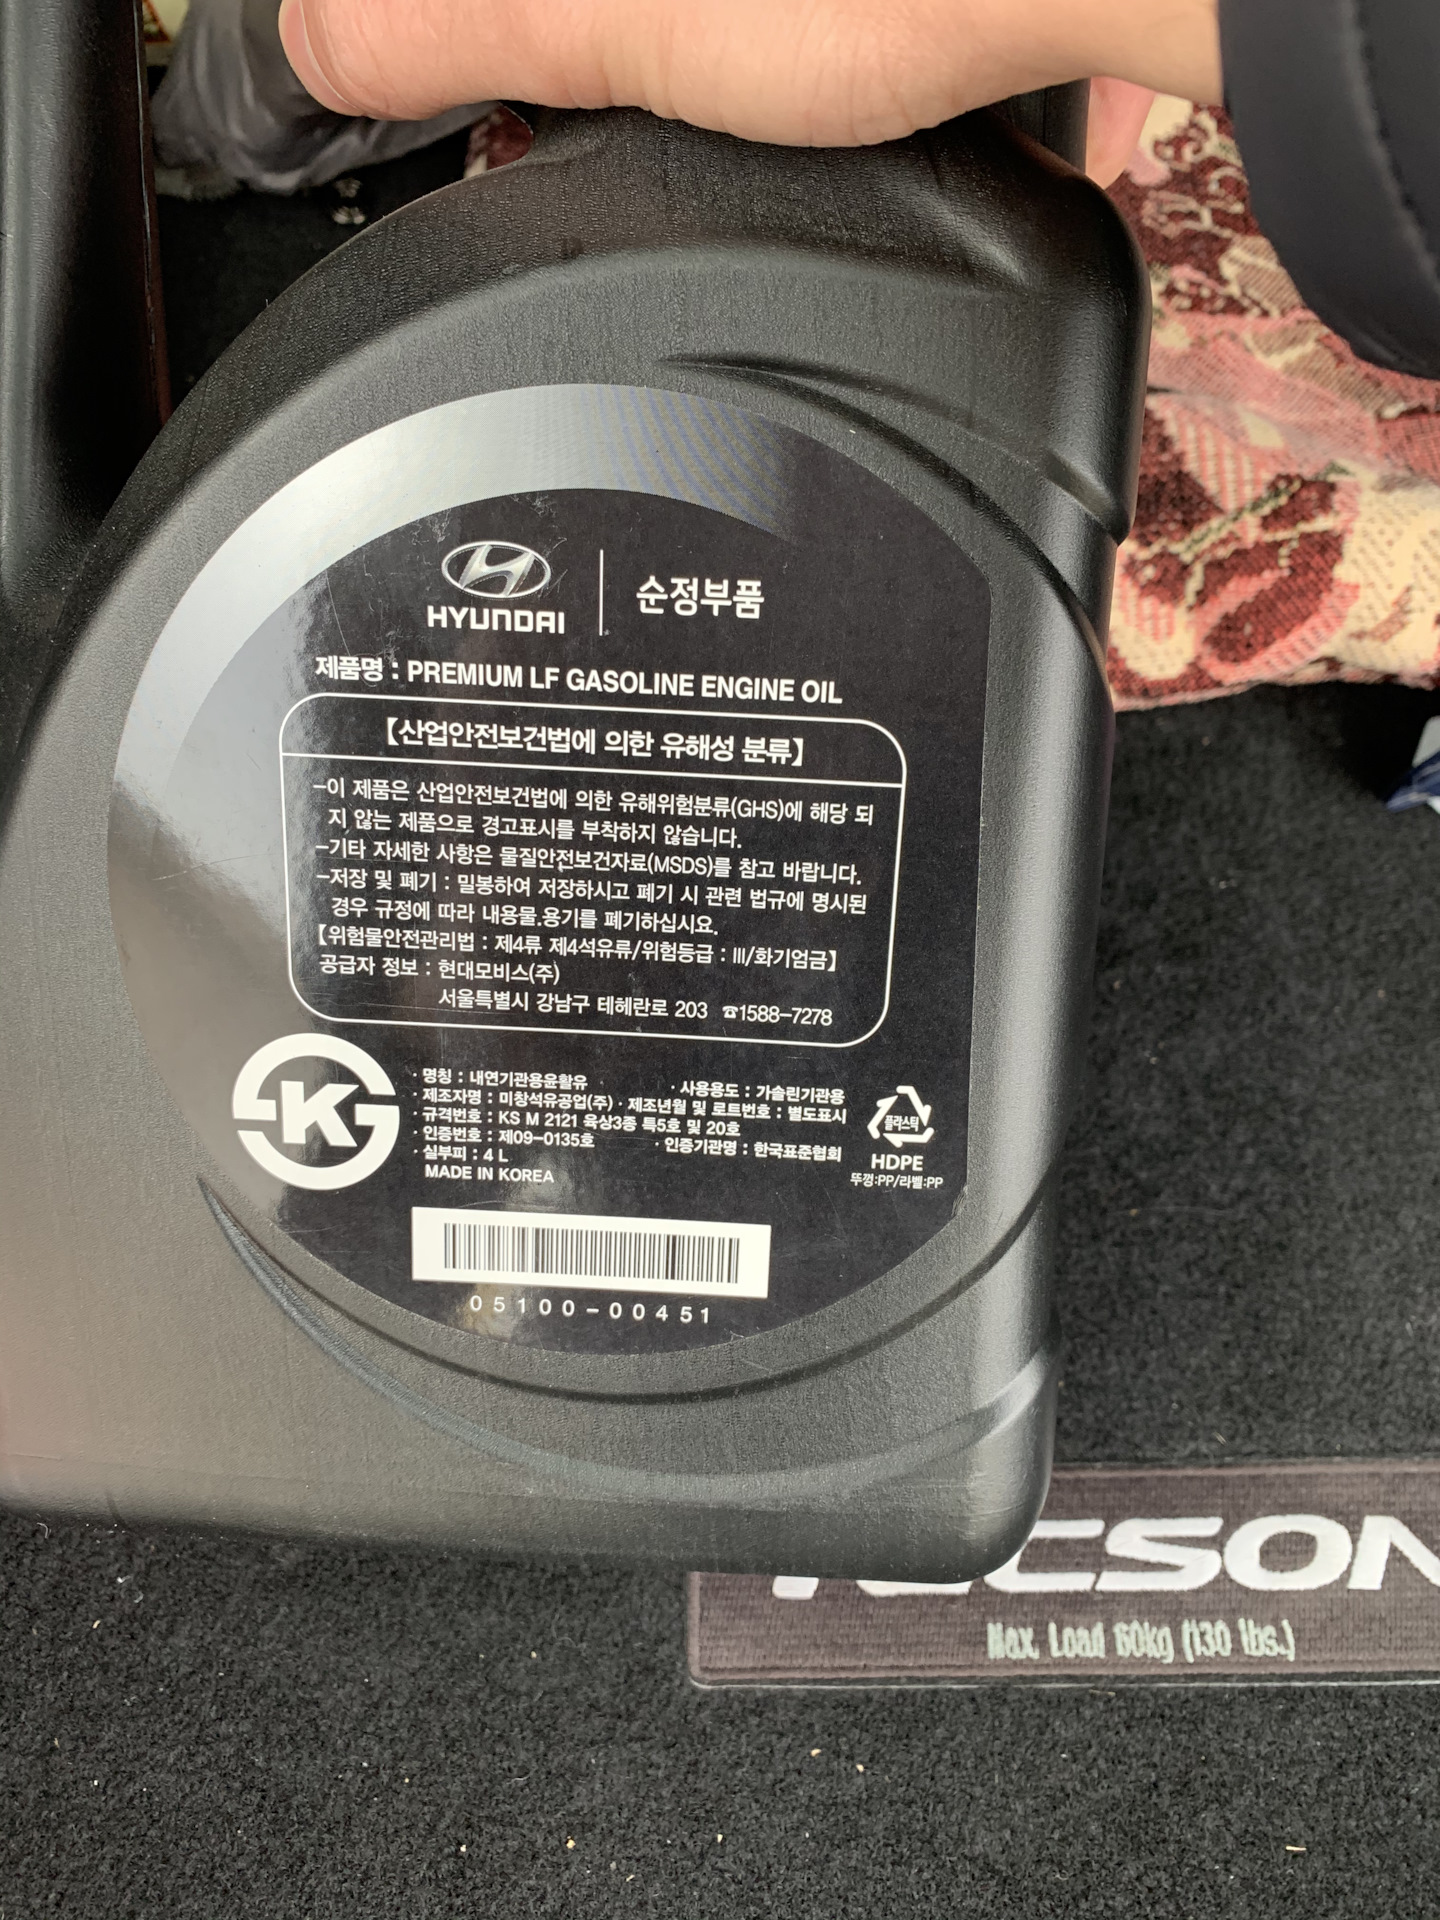 Хендай туссан масло в двигатель 2.0 бензин. Hyundai Premium LF gasoline 5w-20. Премиум ЛФ 5w20 вес канистры. Прожарка Premium LF 5-20 bmwservice.